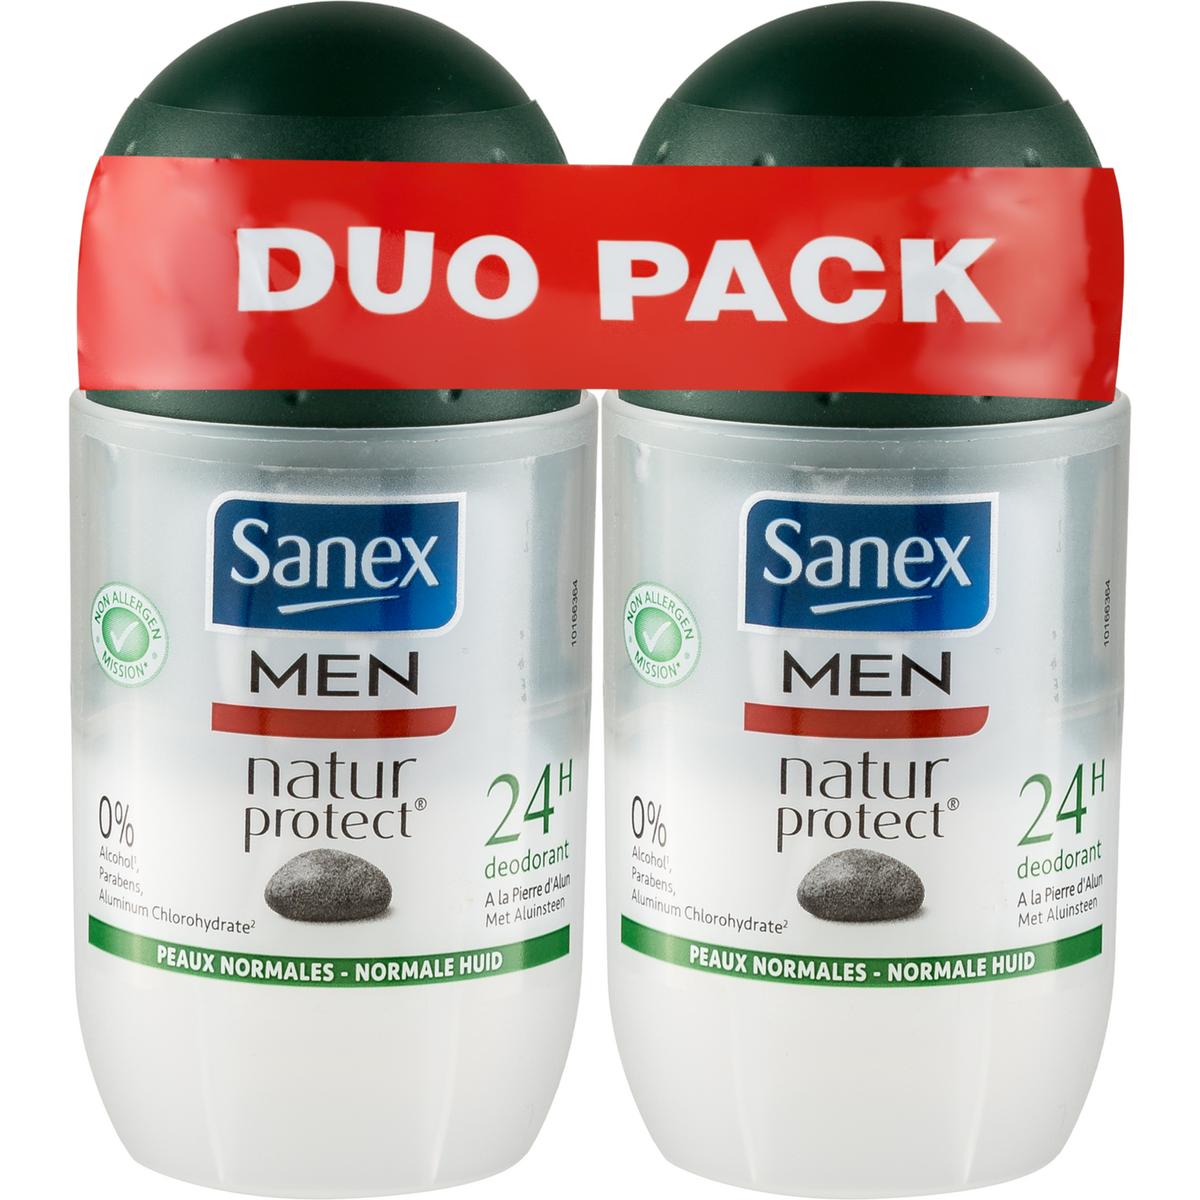 SANEX MEN Natur Protect Déodorant bille Nature peux normales 2x50ml